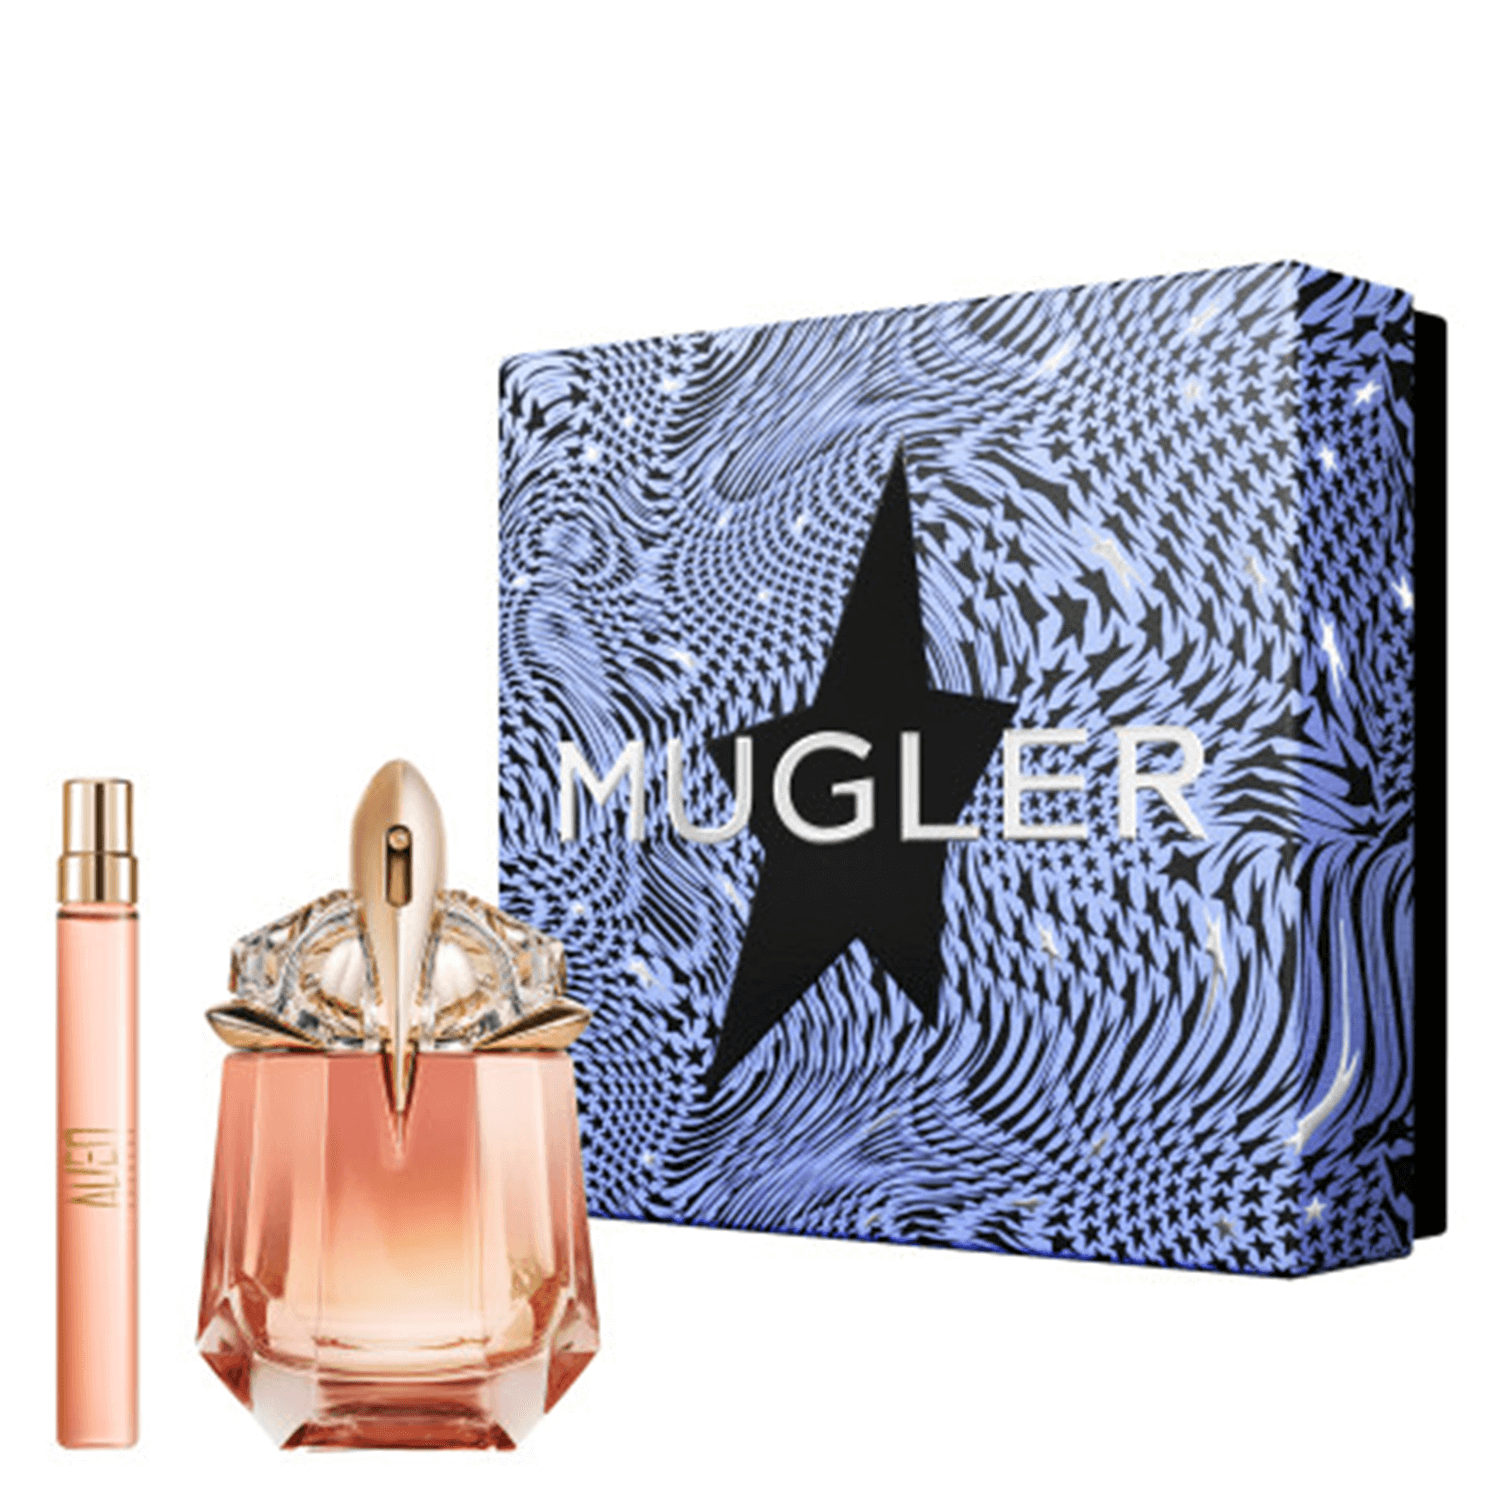 Produktbild von Alien - Goddess Supra Florale Eau de Parfum Set